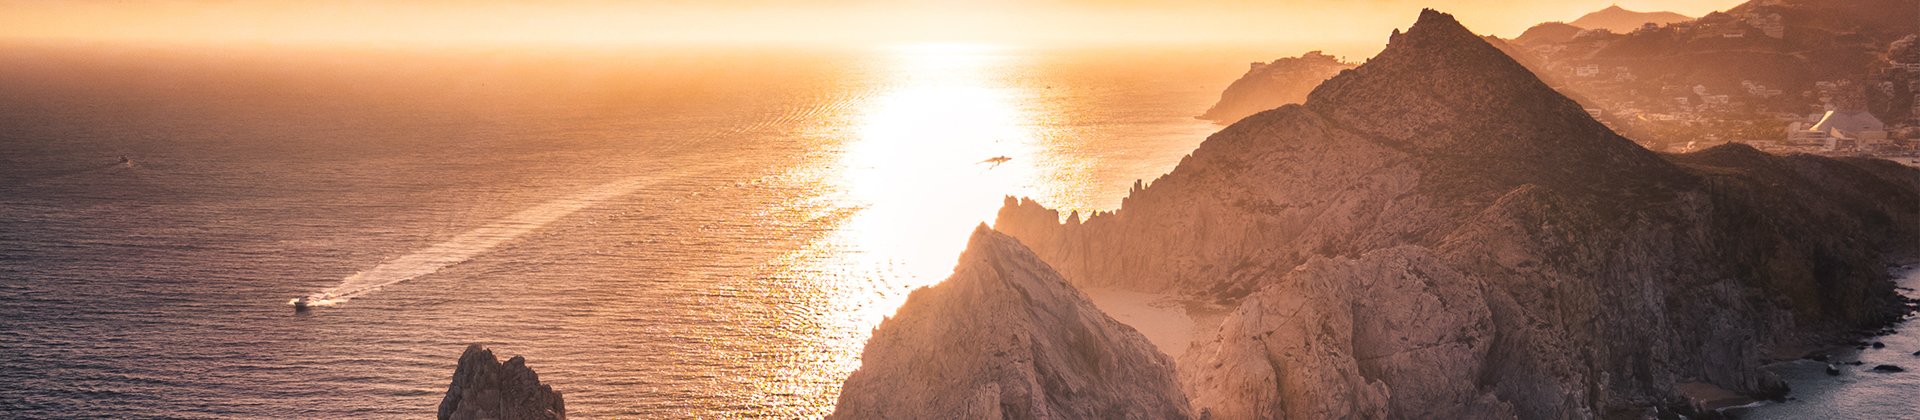 Sunset at Los Cabos Baja California